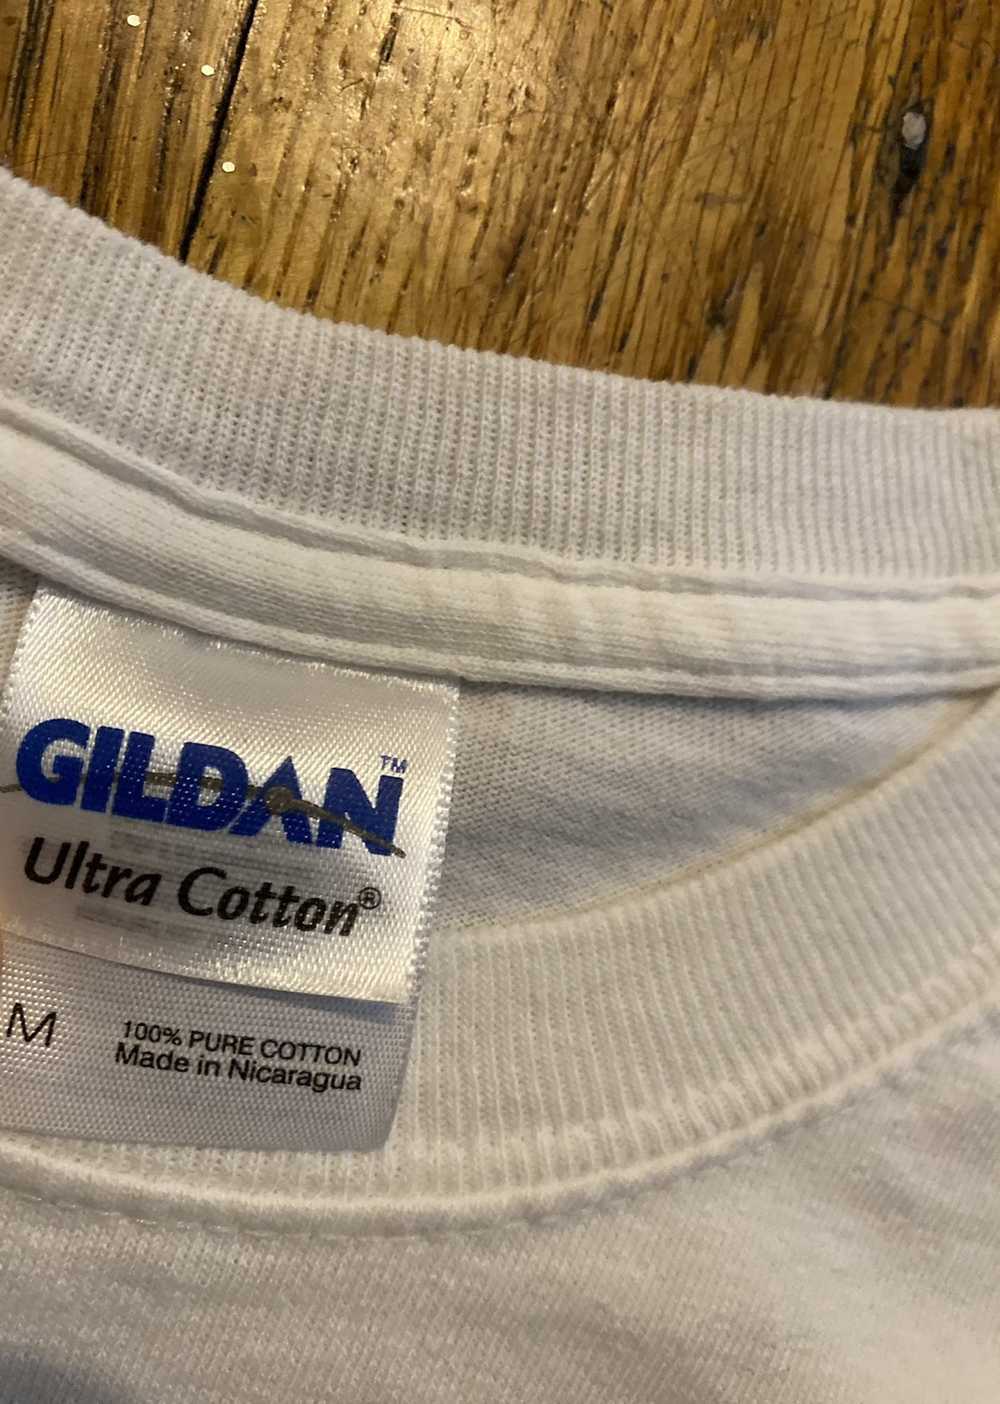 Gildan Tyler Clem Racing Shirt - image 4